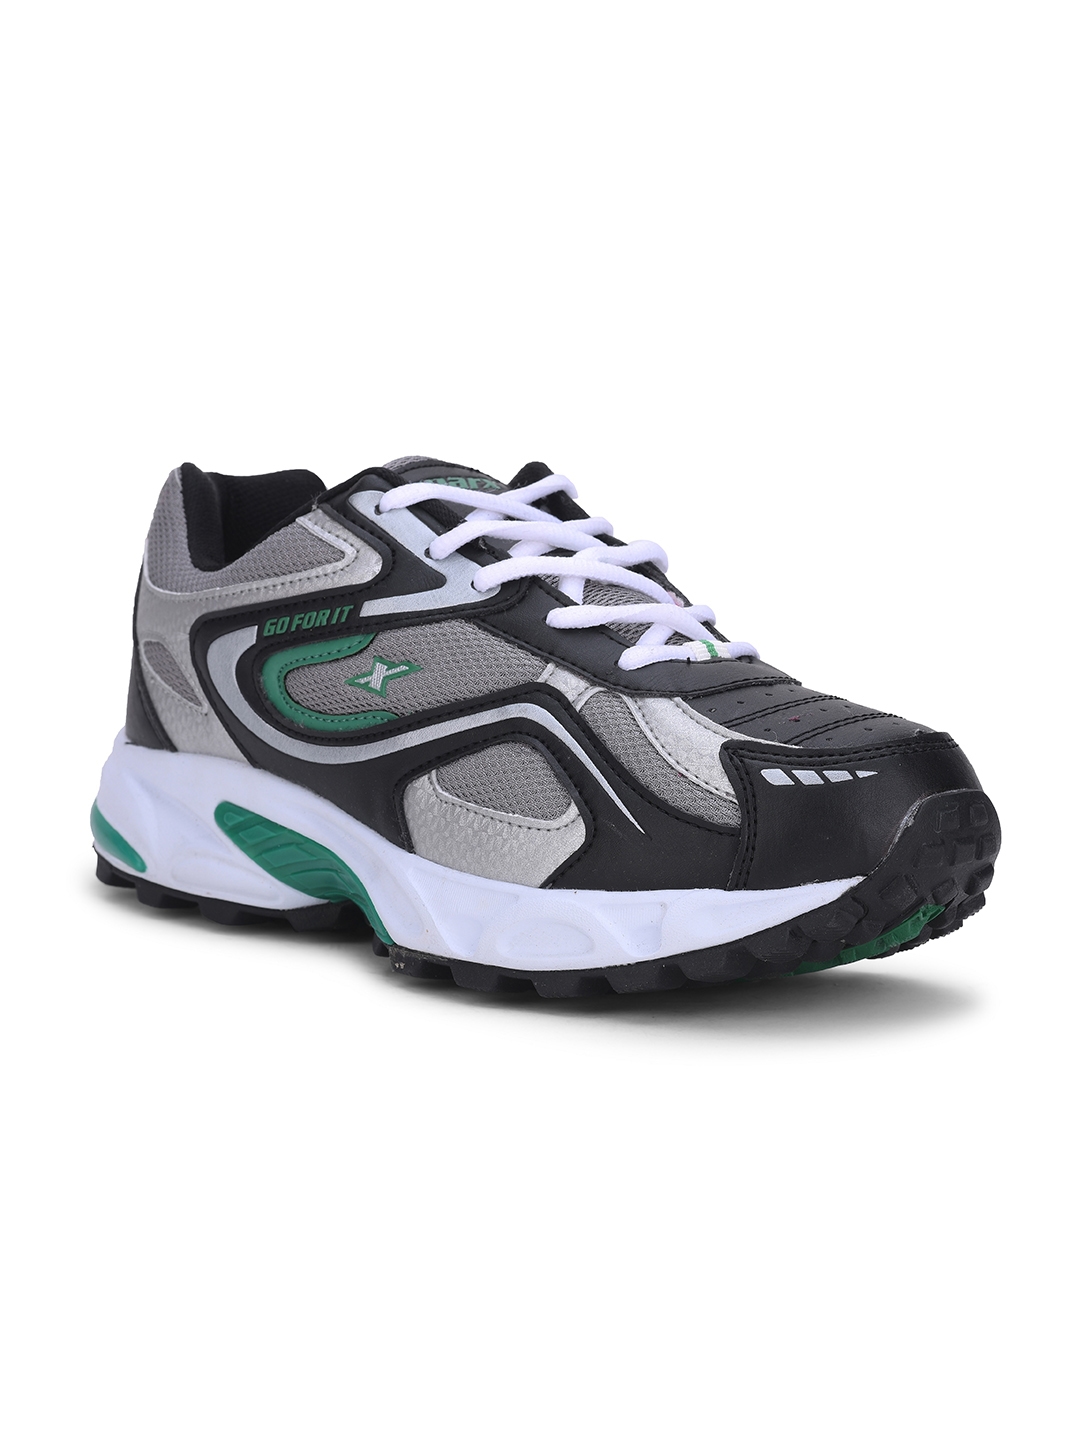 LANCER NORTH-PRO-BGN Running Shoes For Men - Buy LANCER NORTH-PRO-BGN  Running Shoes For Men Online at Best Price - Shop Online for Footwears in  India | Flipkart.com